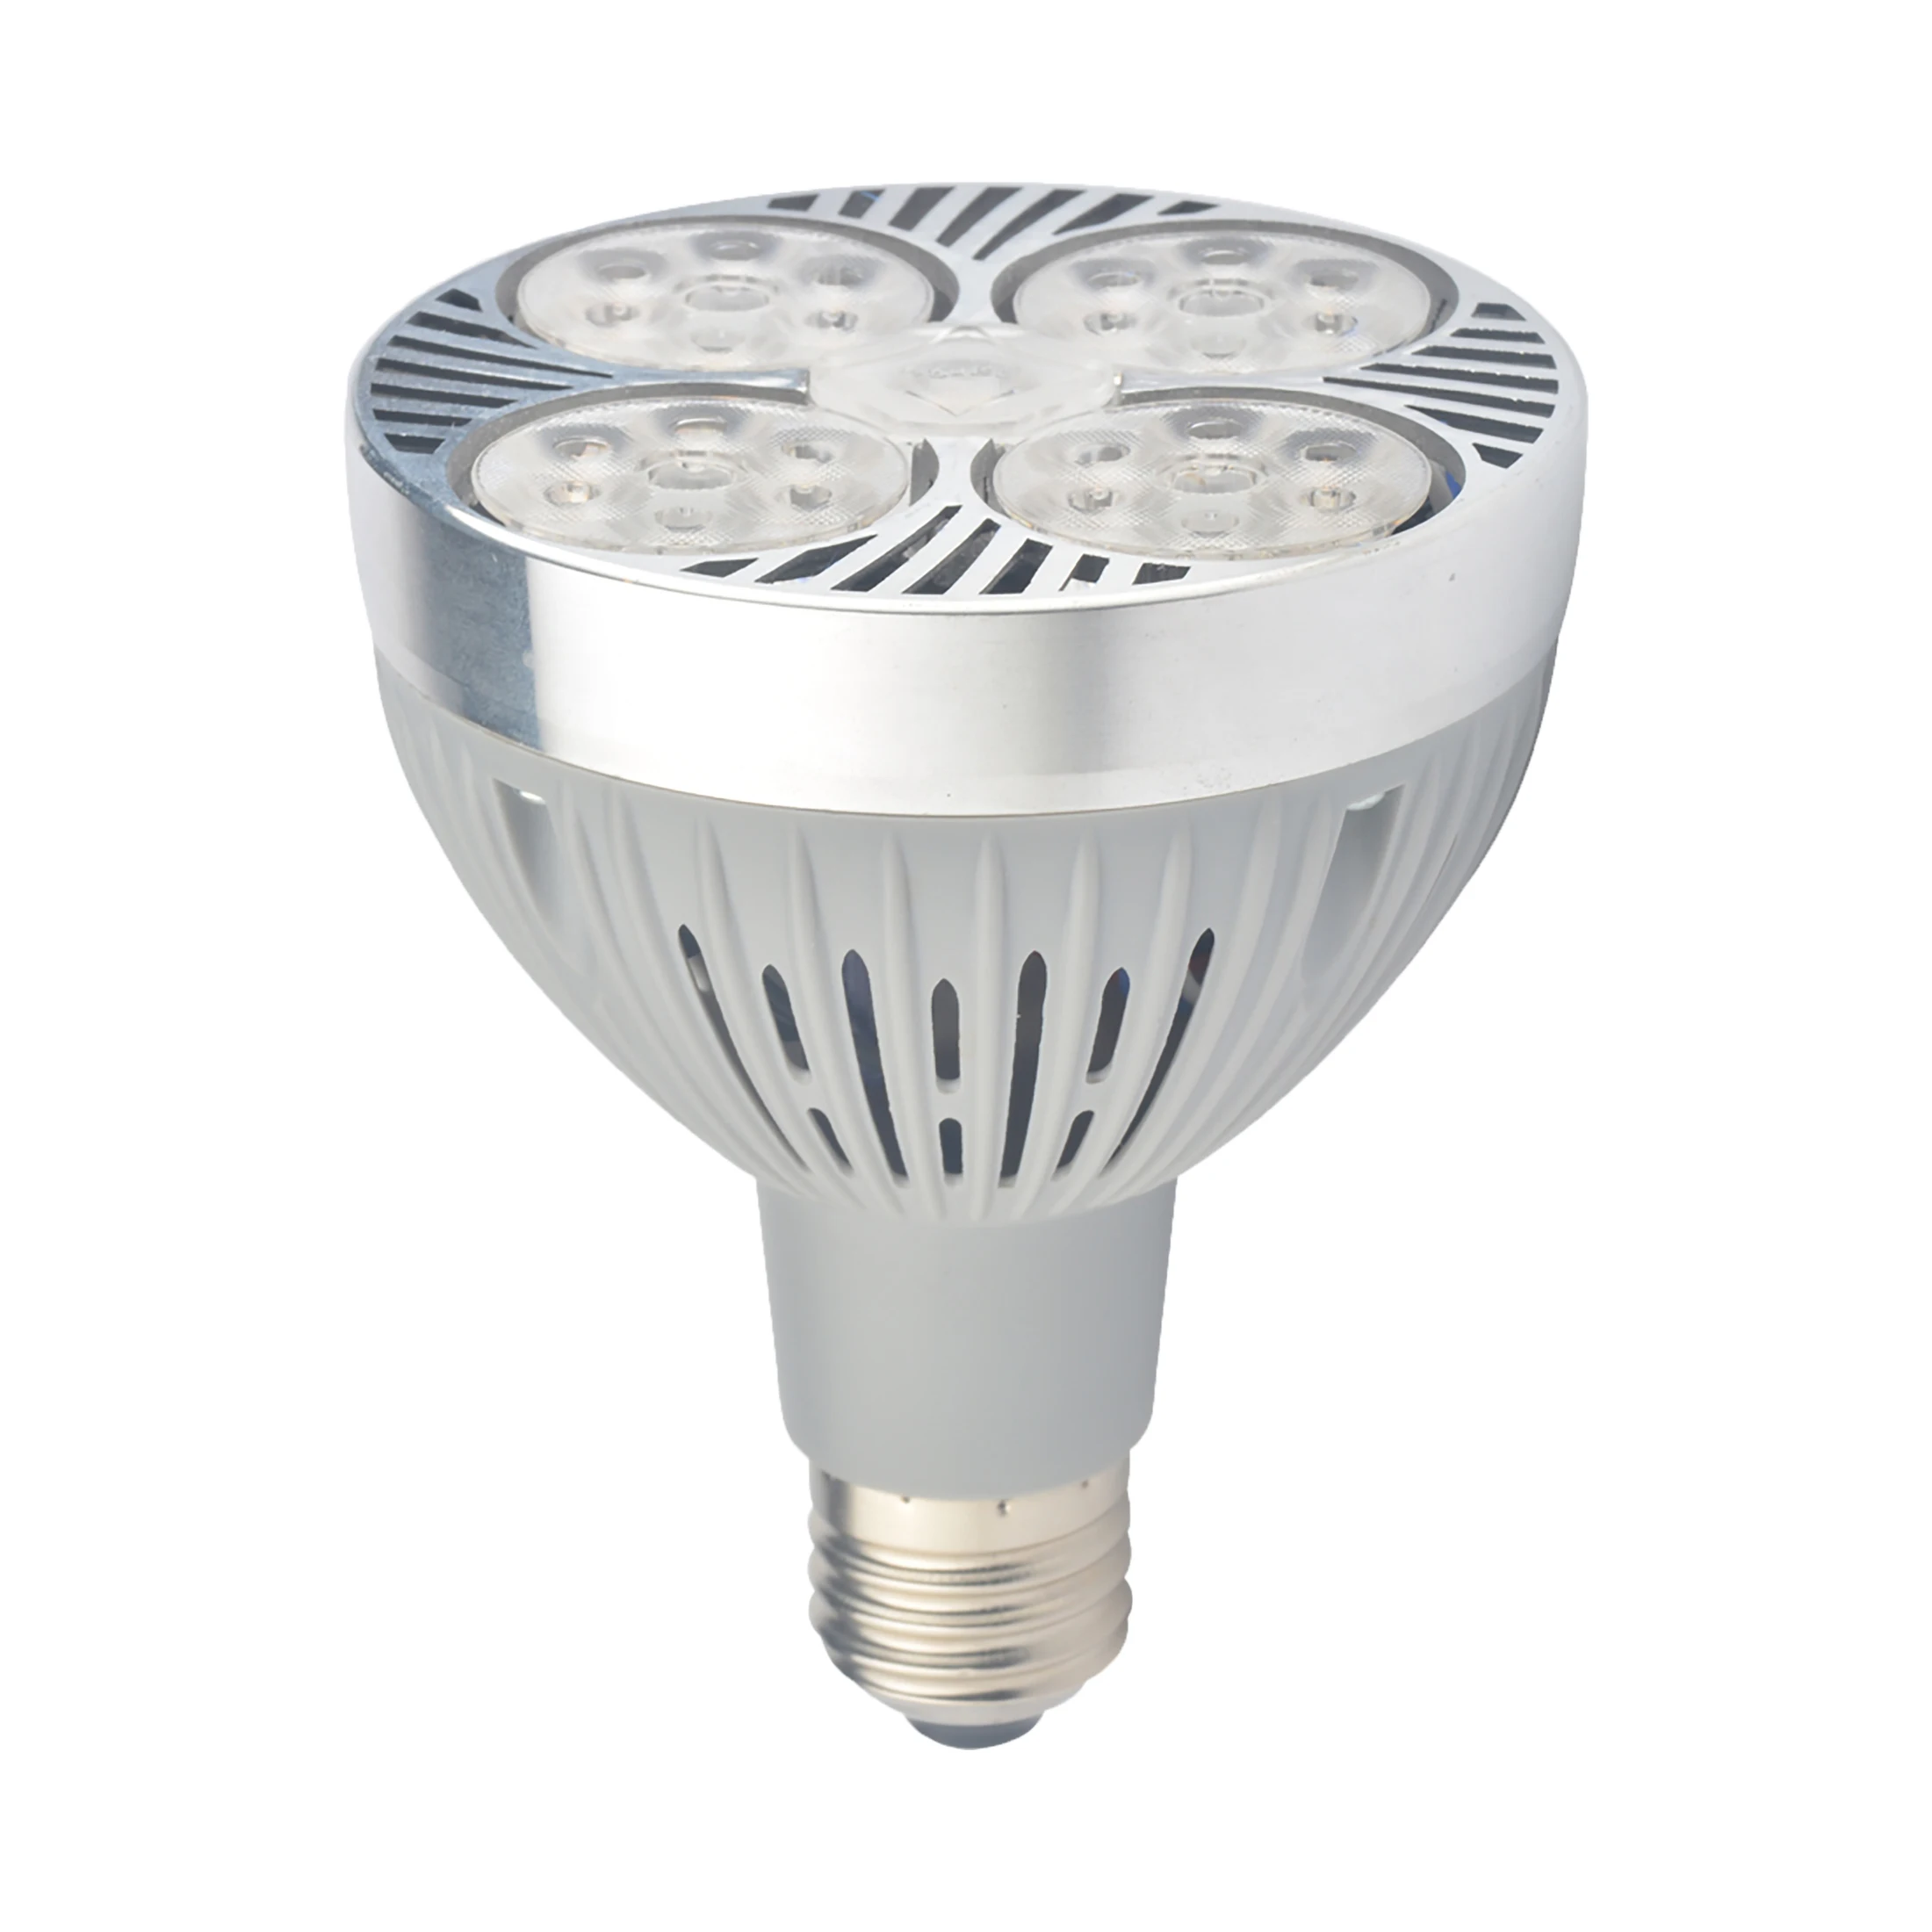 JHOW P3228 Wholesale New Design Commercial LED Light Aluminum Alloy Par30 Bulb 28W LED Spot Light